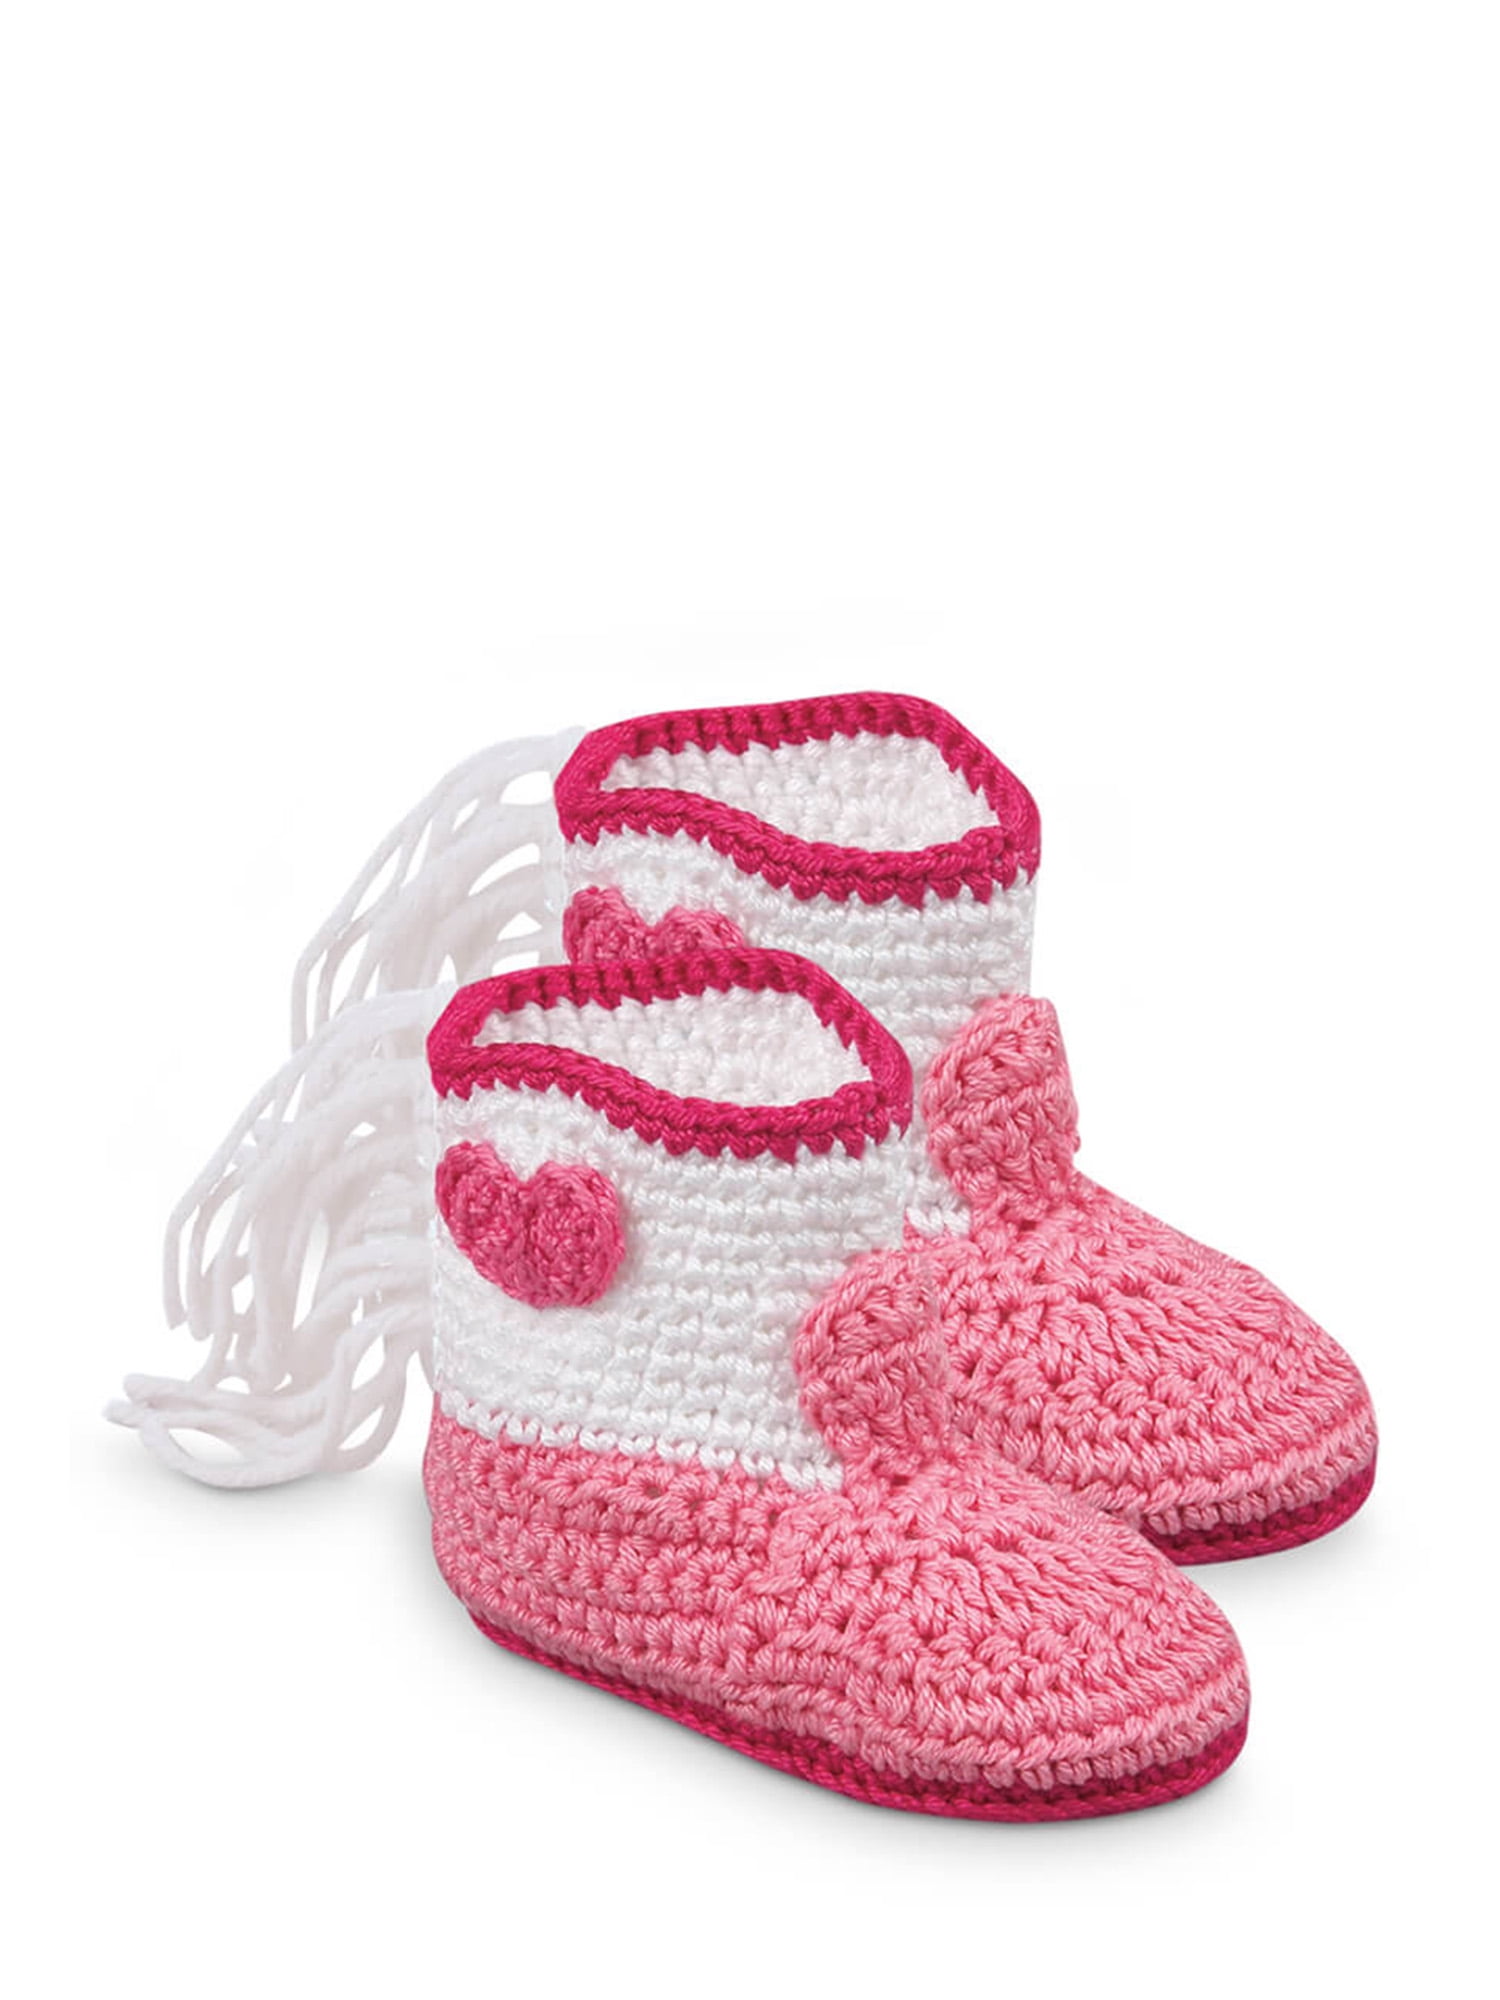 Handmade Crochet Baby Boy/Girls Cuffed teddy booties 0-3 3-6 Months blue/pink 